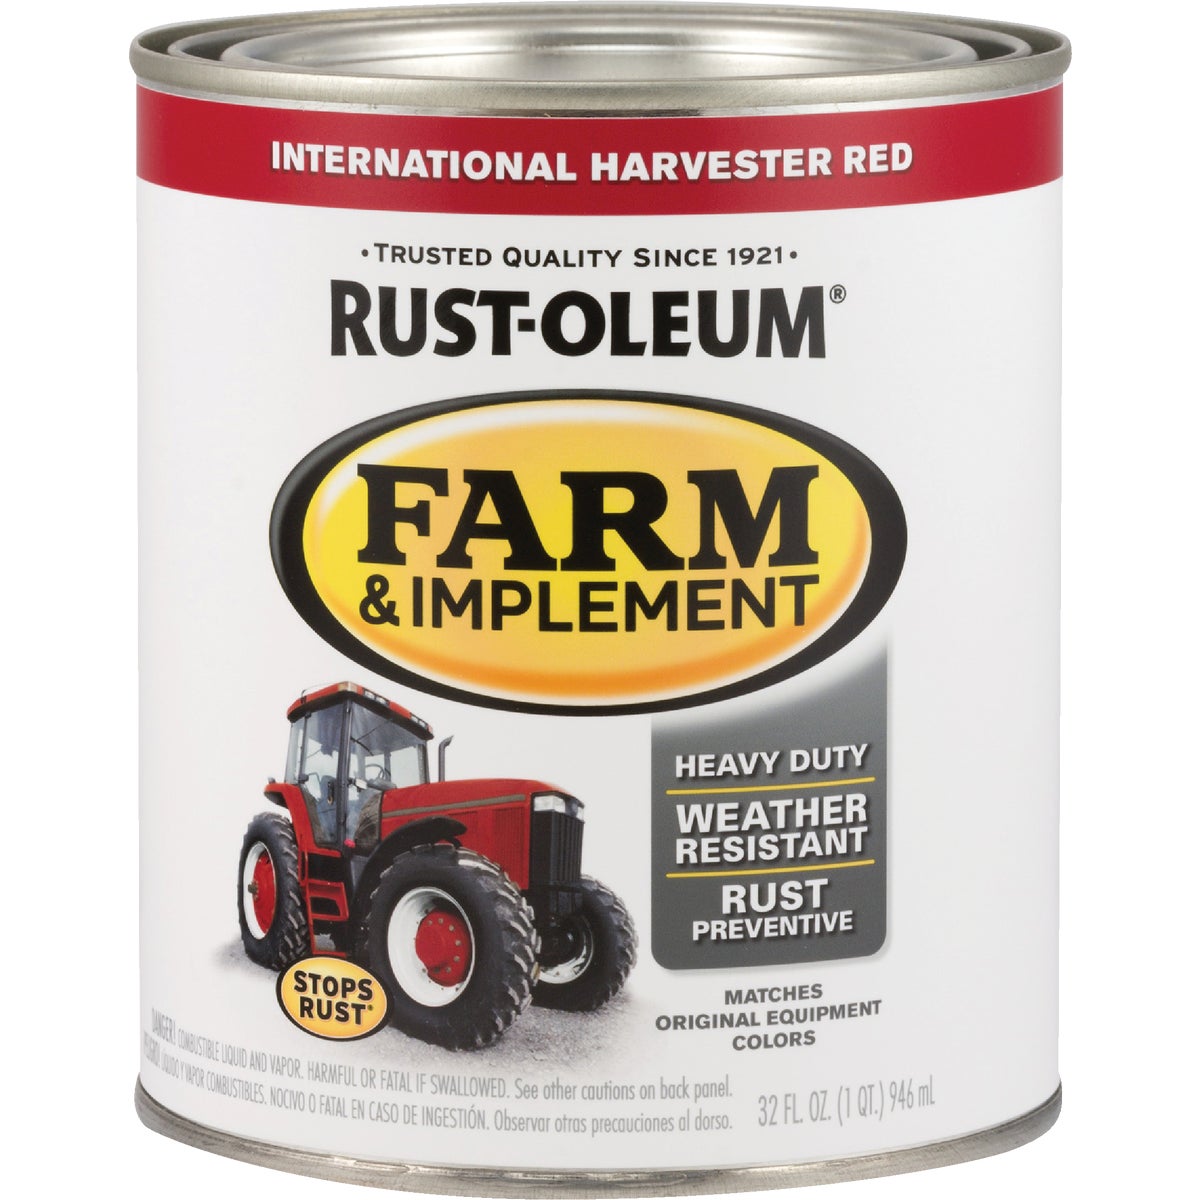 Rust-Oleum 1 Quart International Harvester Red Gloss Farm & Implement Enamel